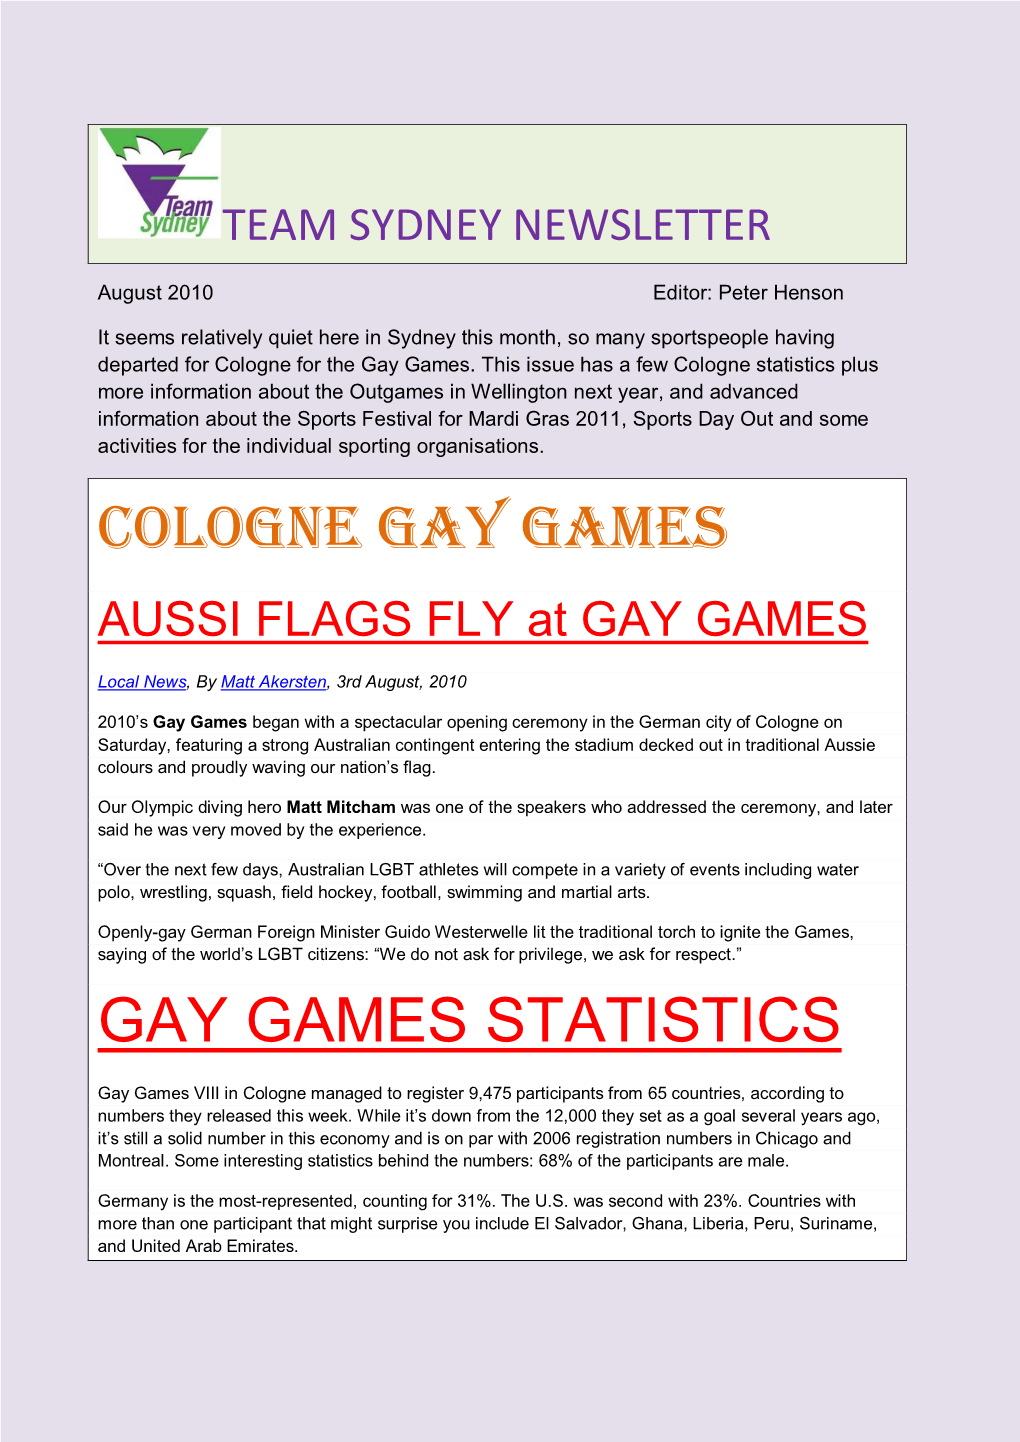 Cologne Gay Games Gay Games Statistics